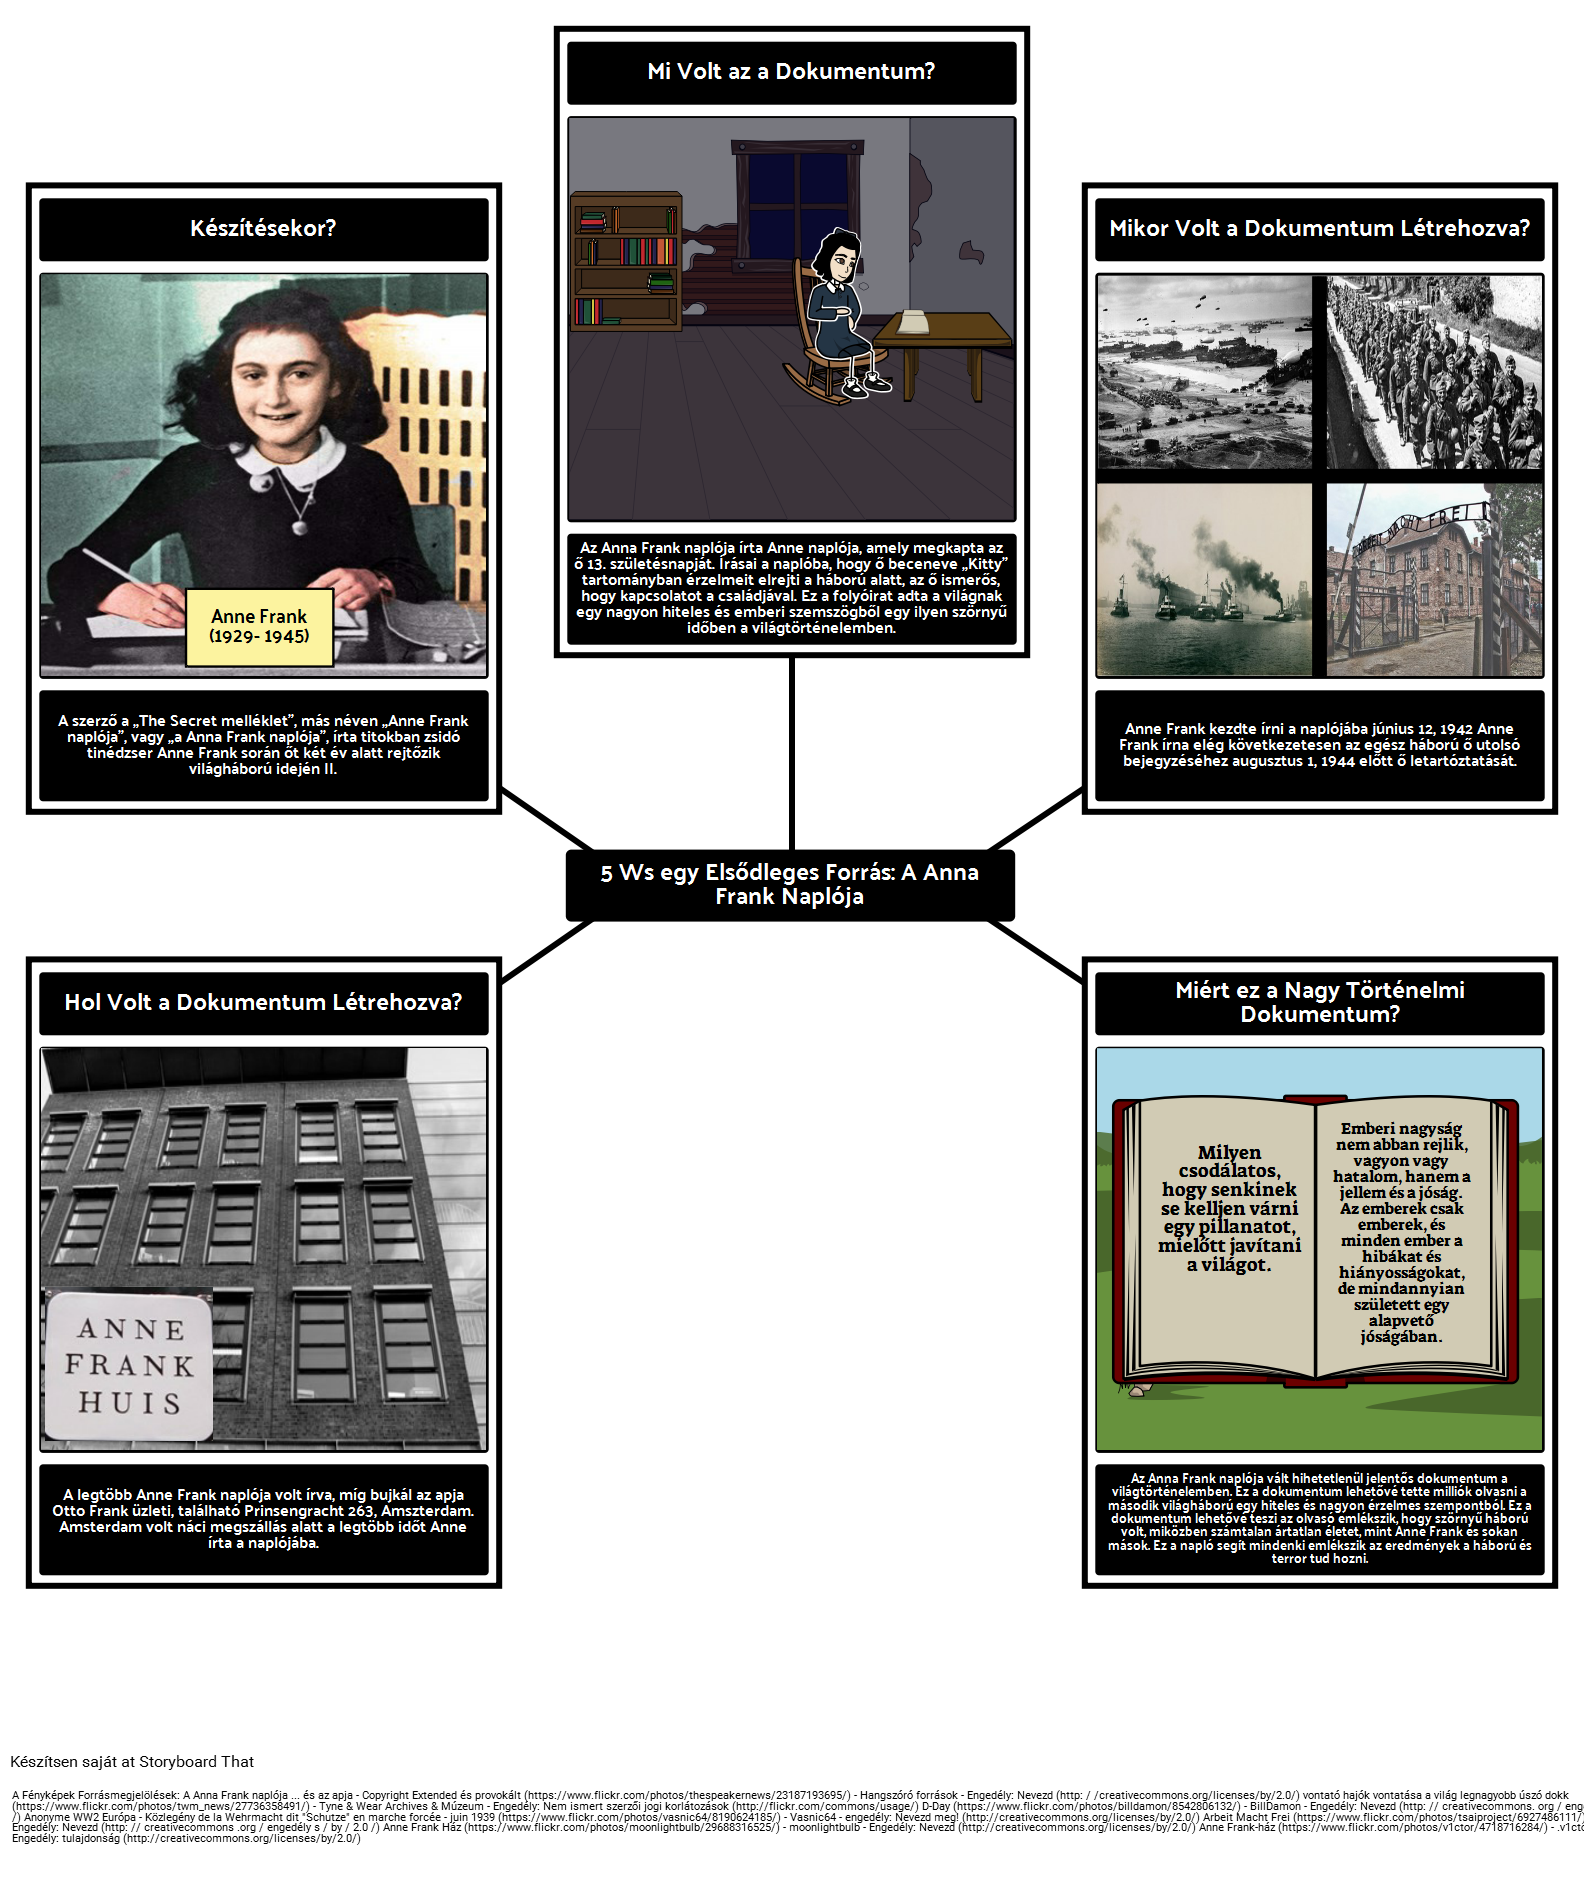 Elsődleges forrás 5Ws: A Anna Frank naplója